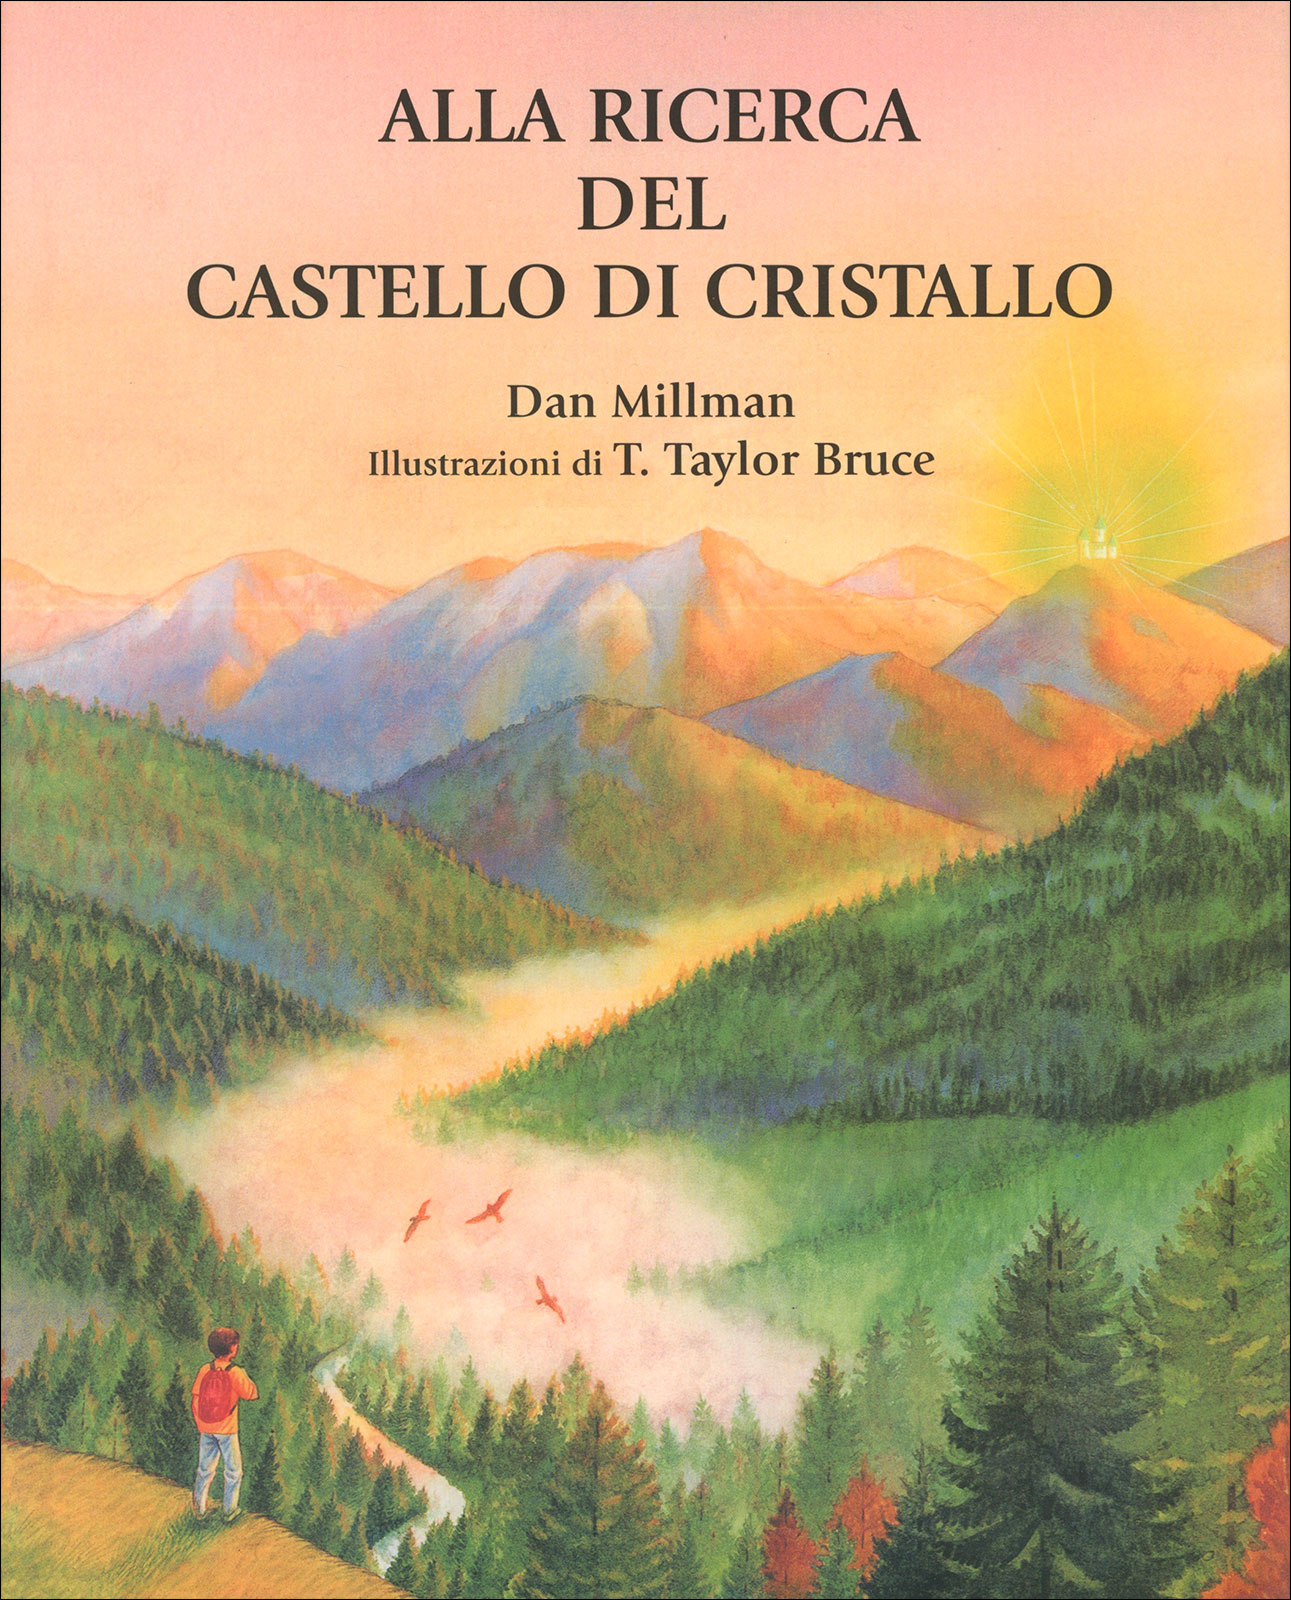 Alla ricerca del castello di cristallo – Dan Millman (approfondimento)